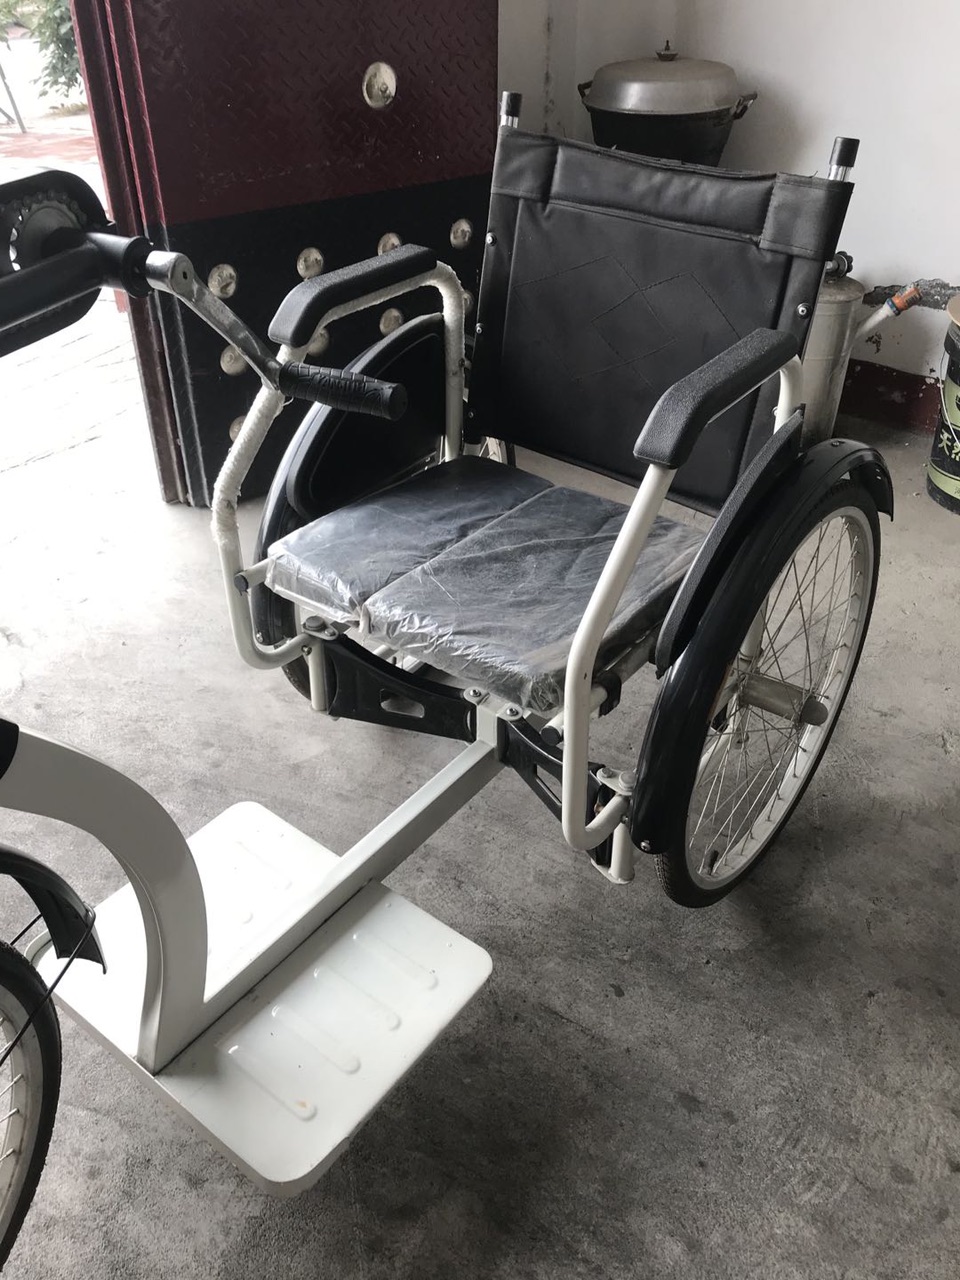 出售闲置全新手摇式轮椅三百元,买了一次没用过,非诚